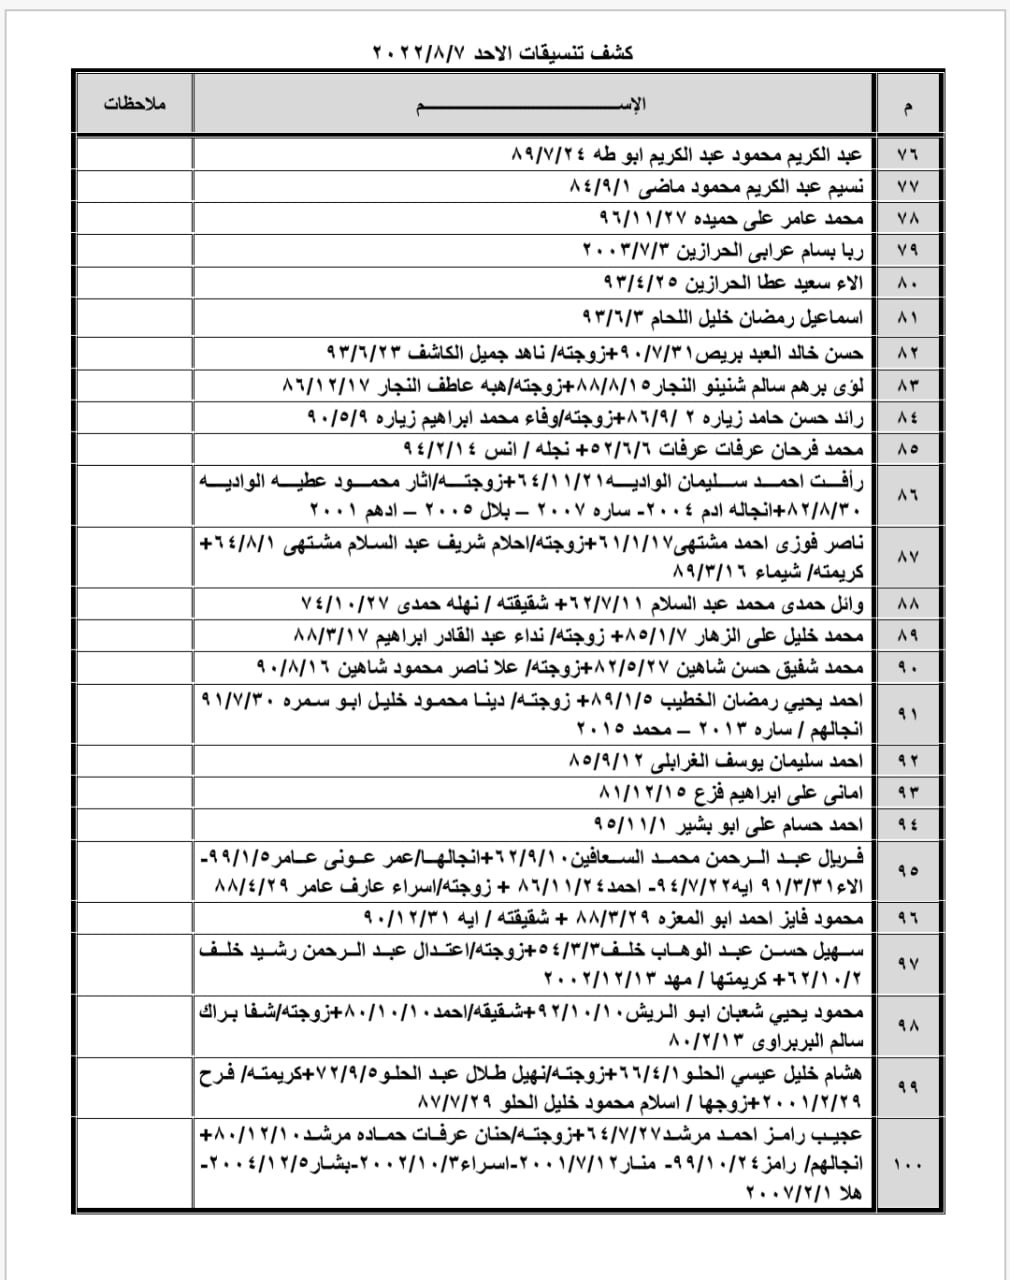 بالأسماء: كشف "تنسيقات مصرية" للسفر عبر معبر رفح الأحد 7 أغسطس 2022